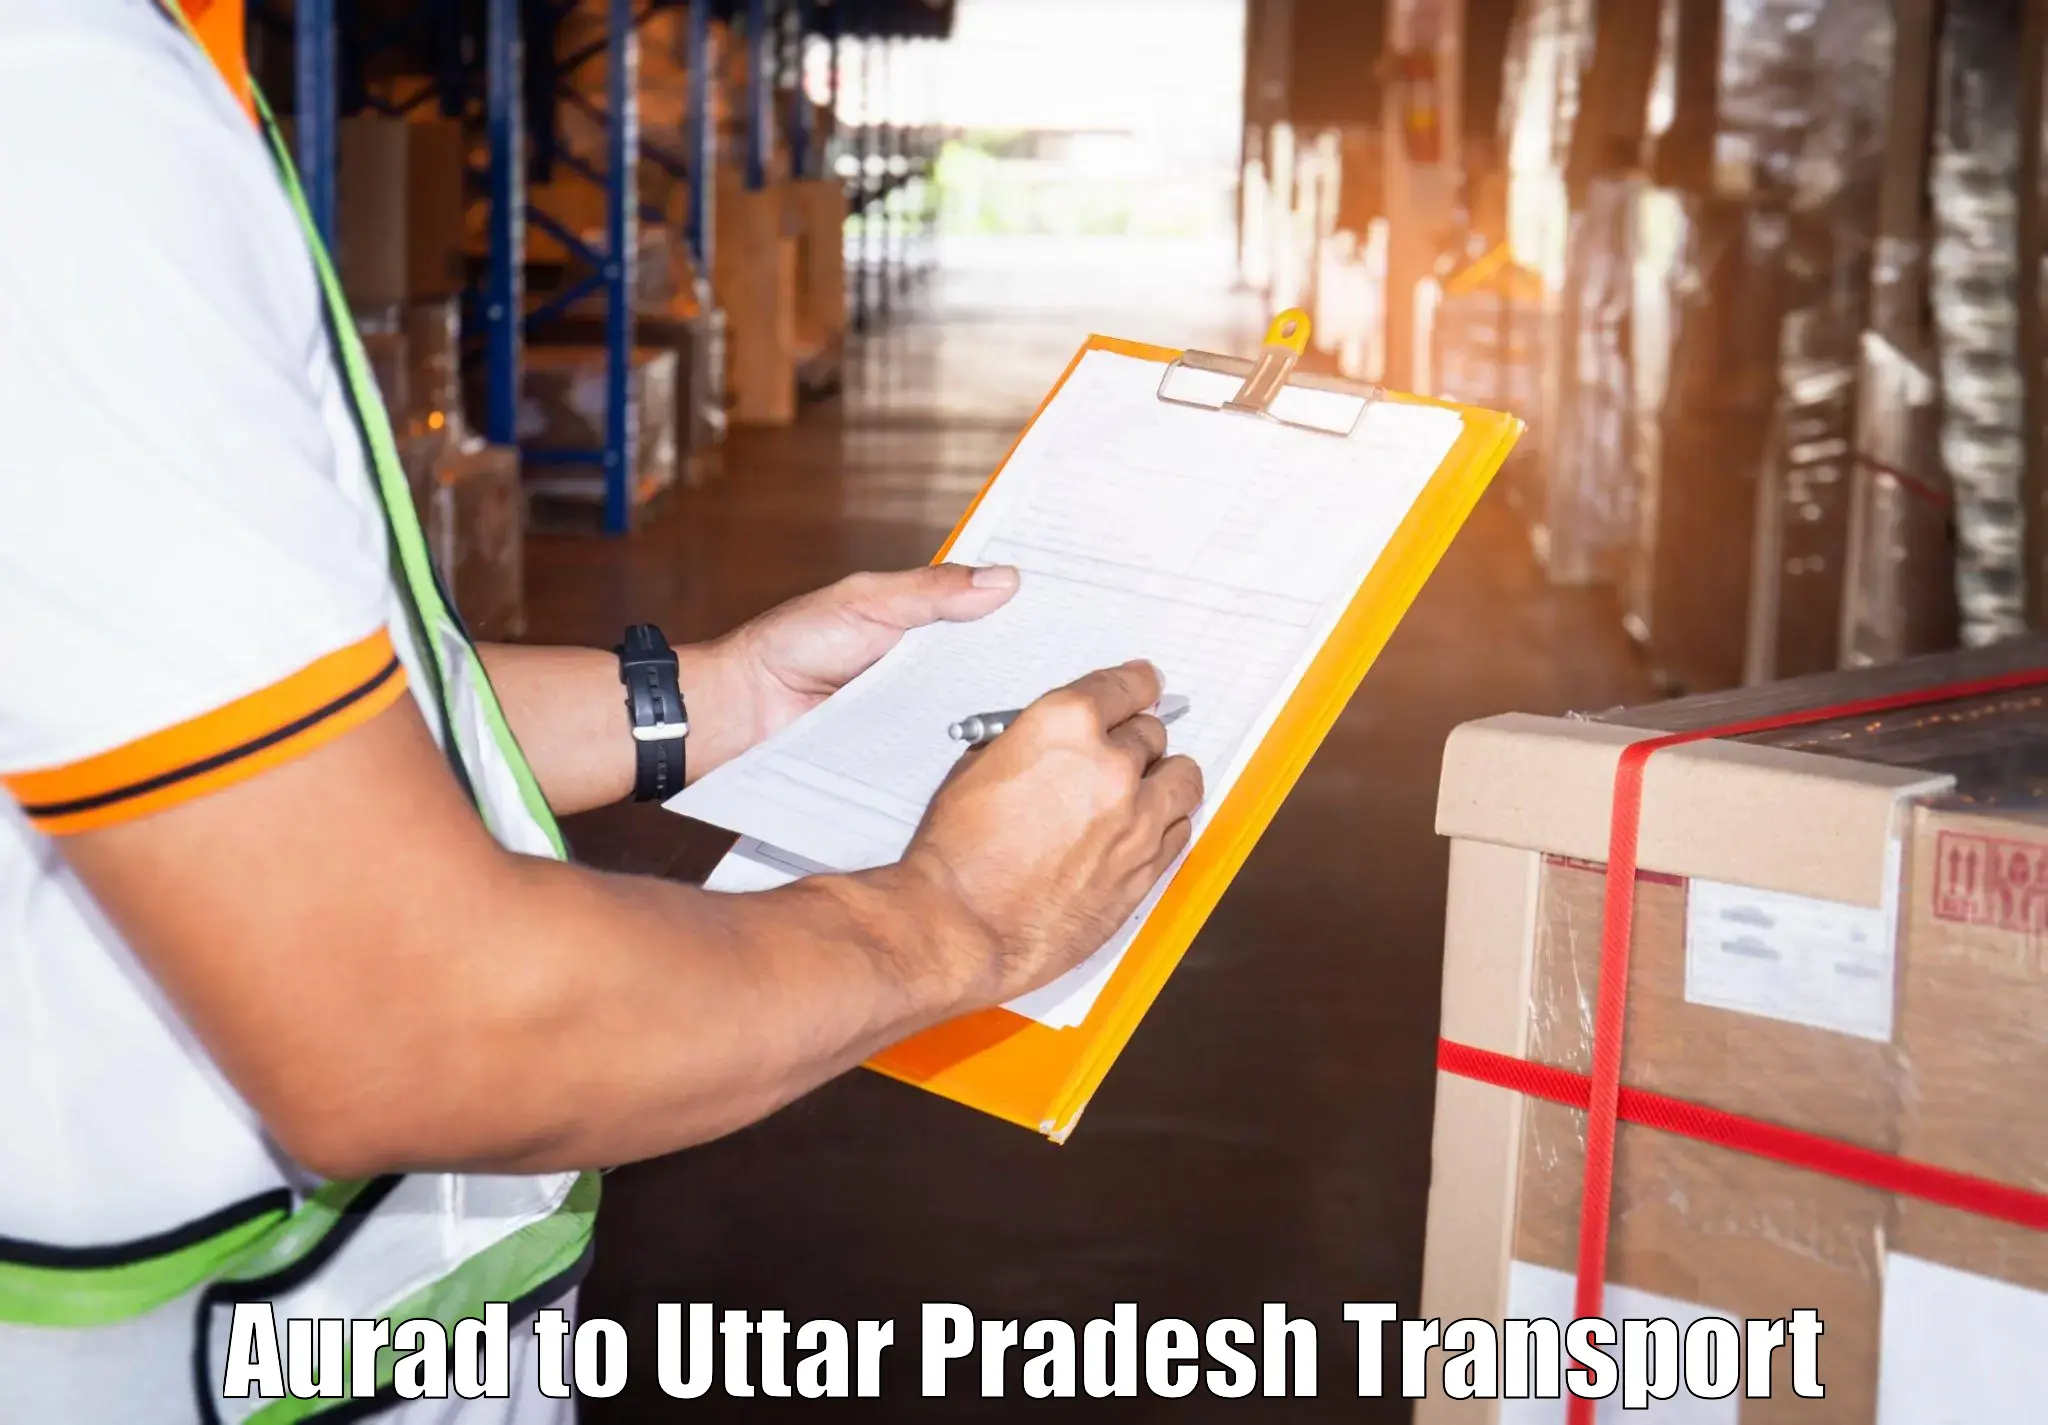 Cargo transportation services Aurad to Shohratgarh